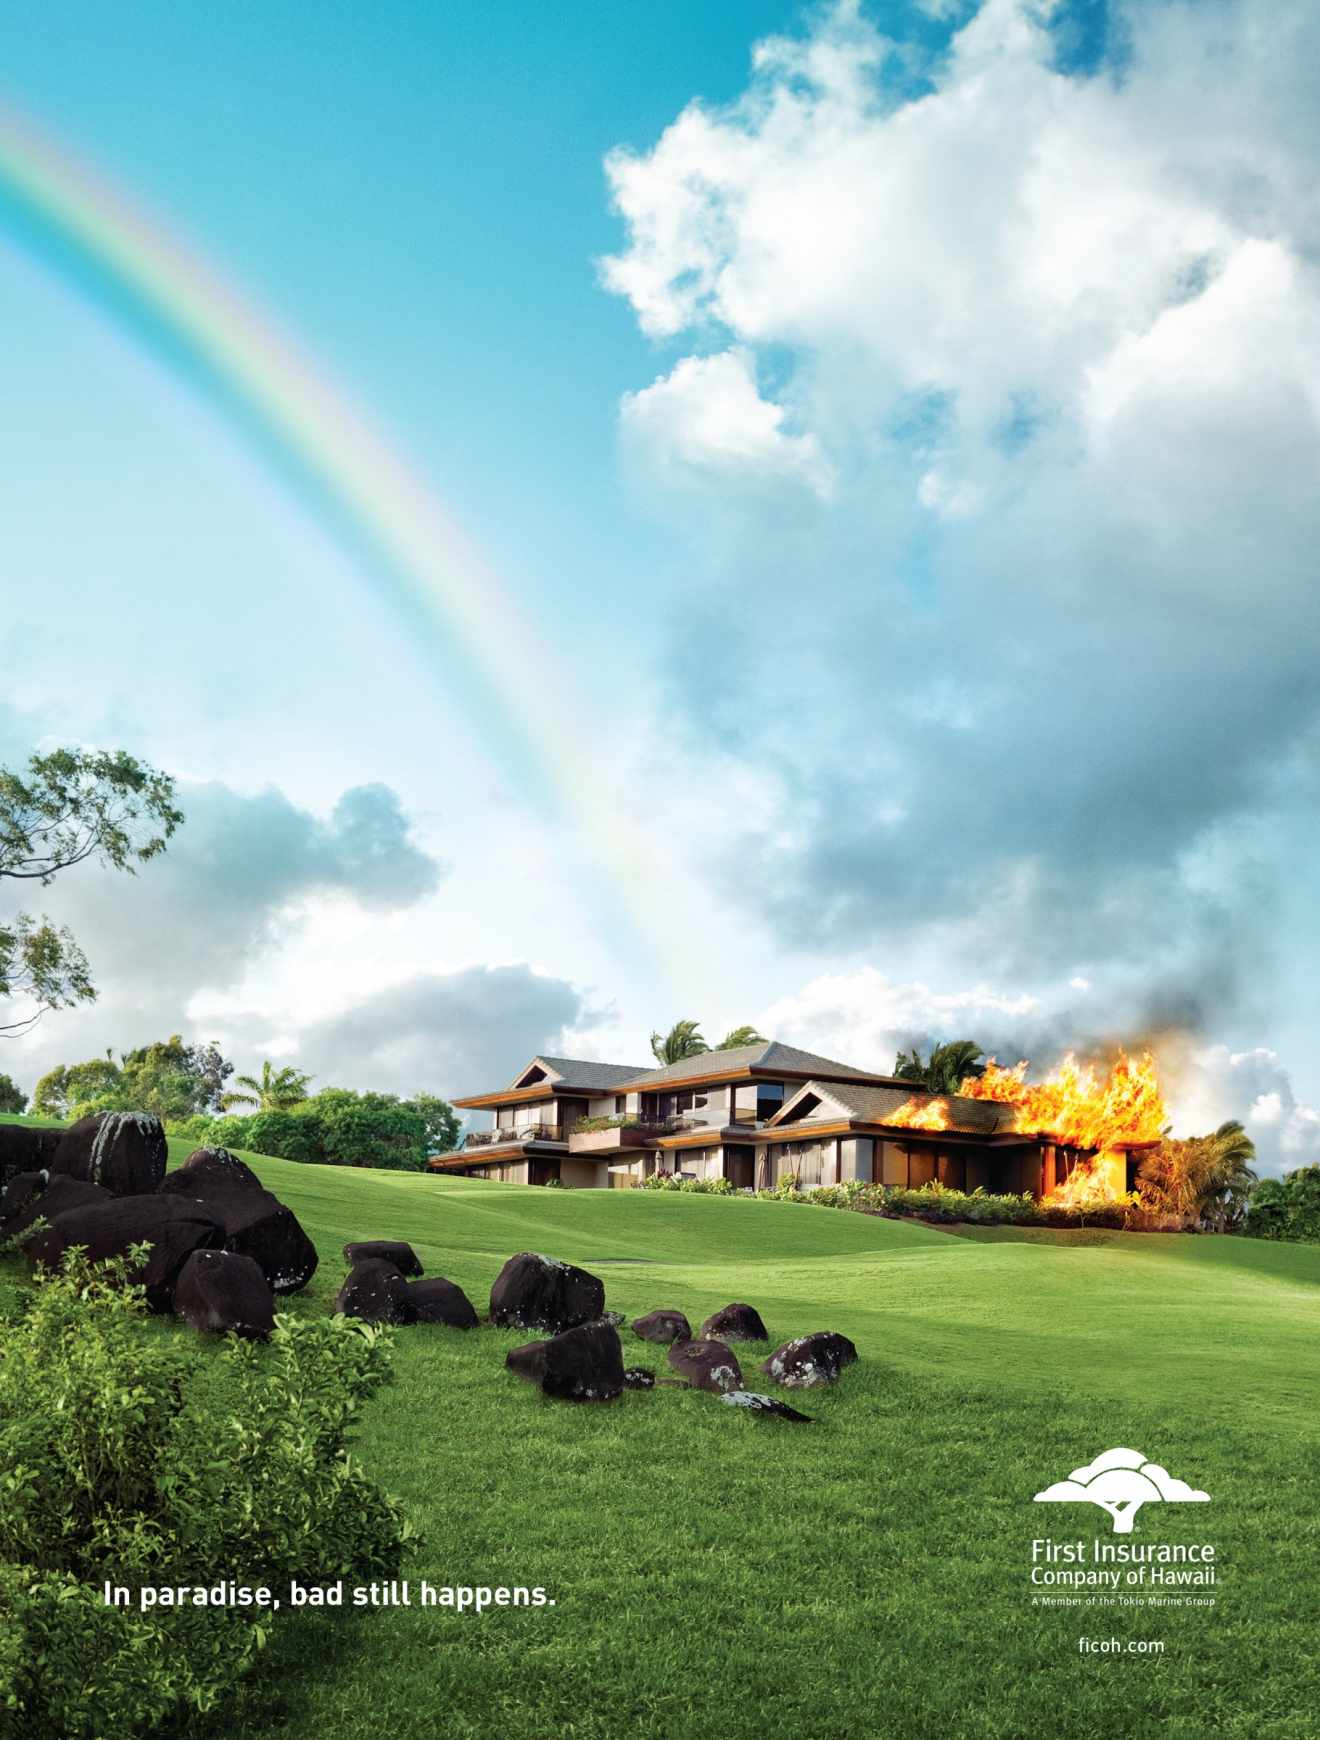 夏威夷保险平面广告设计欣赏-房子篇-尚略广告中国 上海策划公司